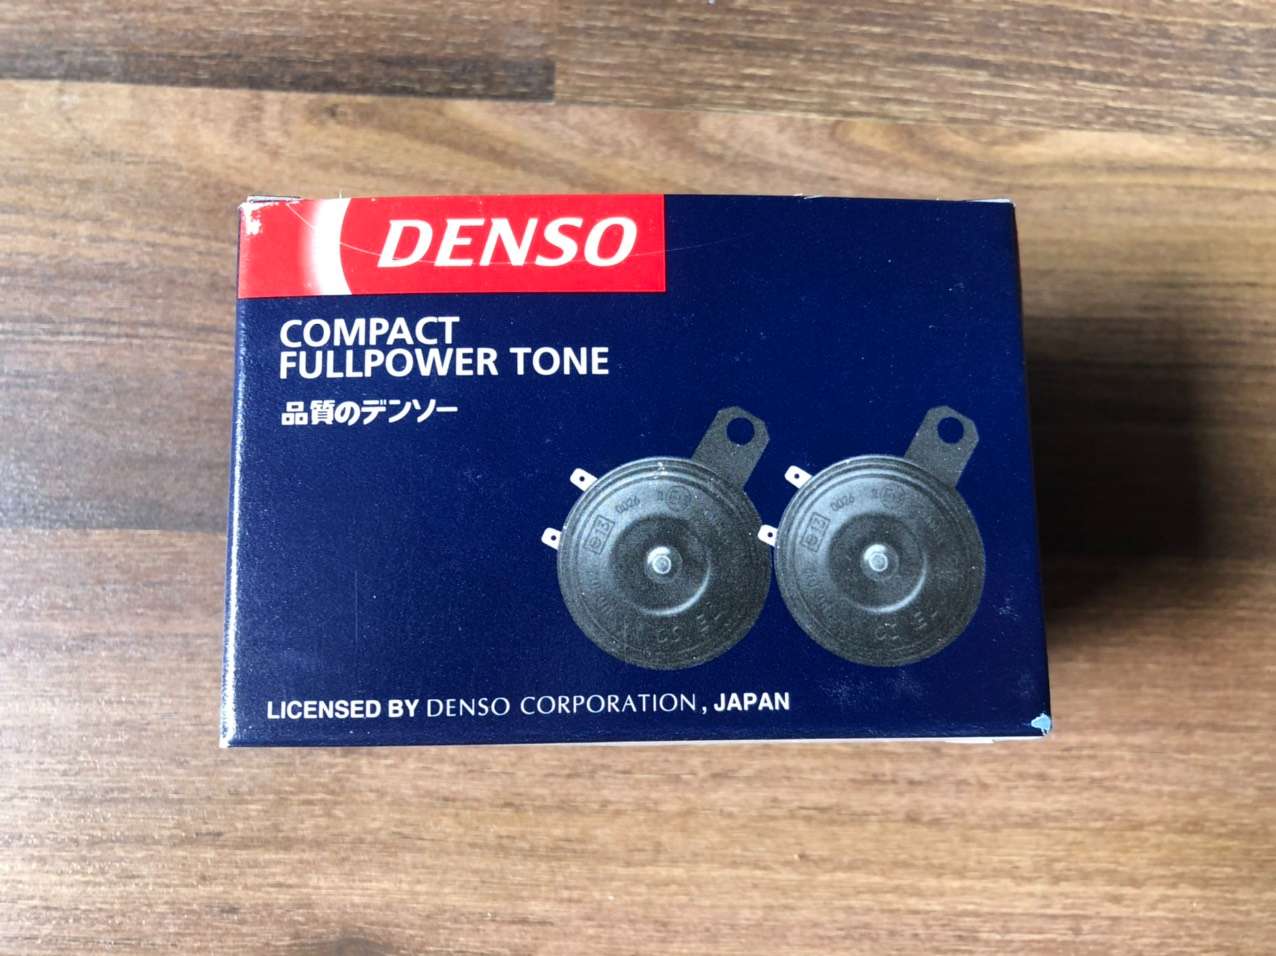 Còi đĩa Denso 24v 2 giắc (JK272000-3400) hàng chính hãng cho nhiều loại xe ôtô